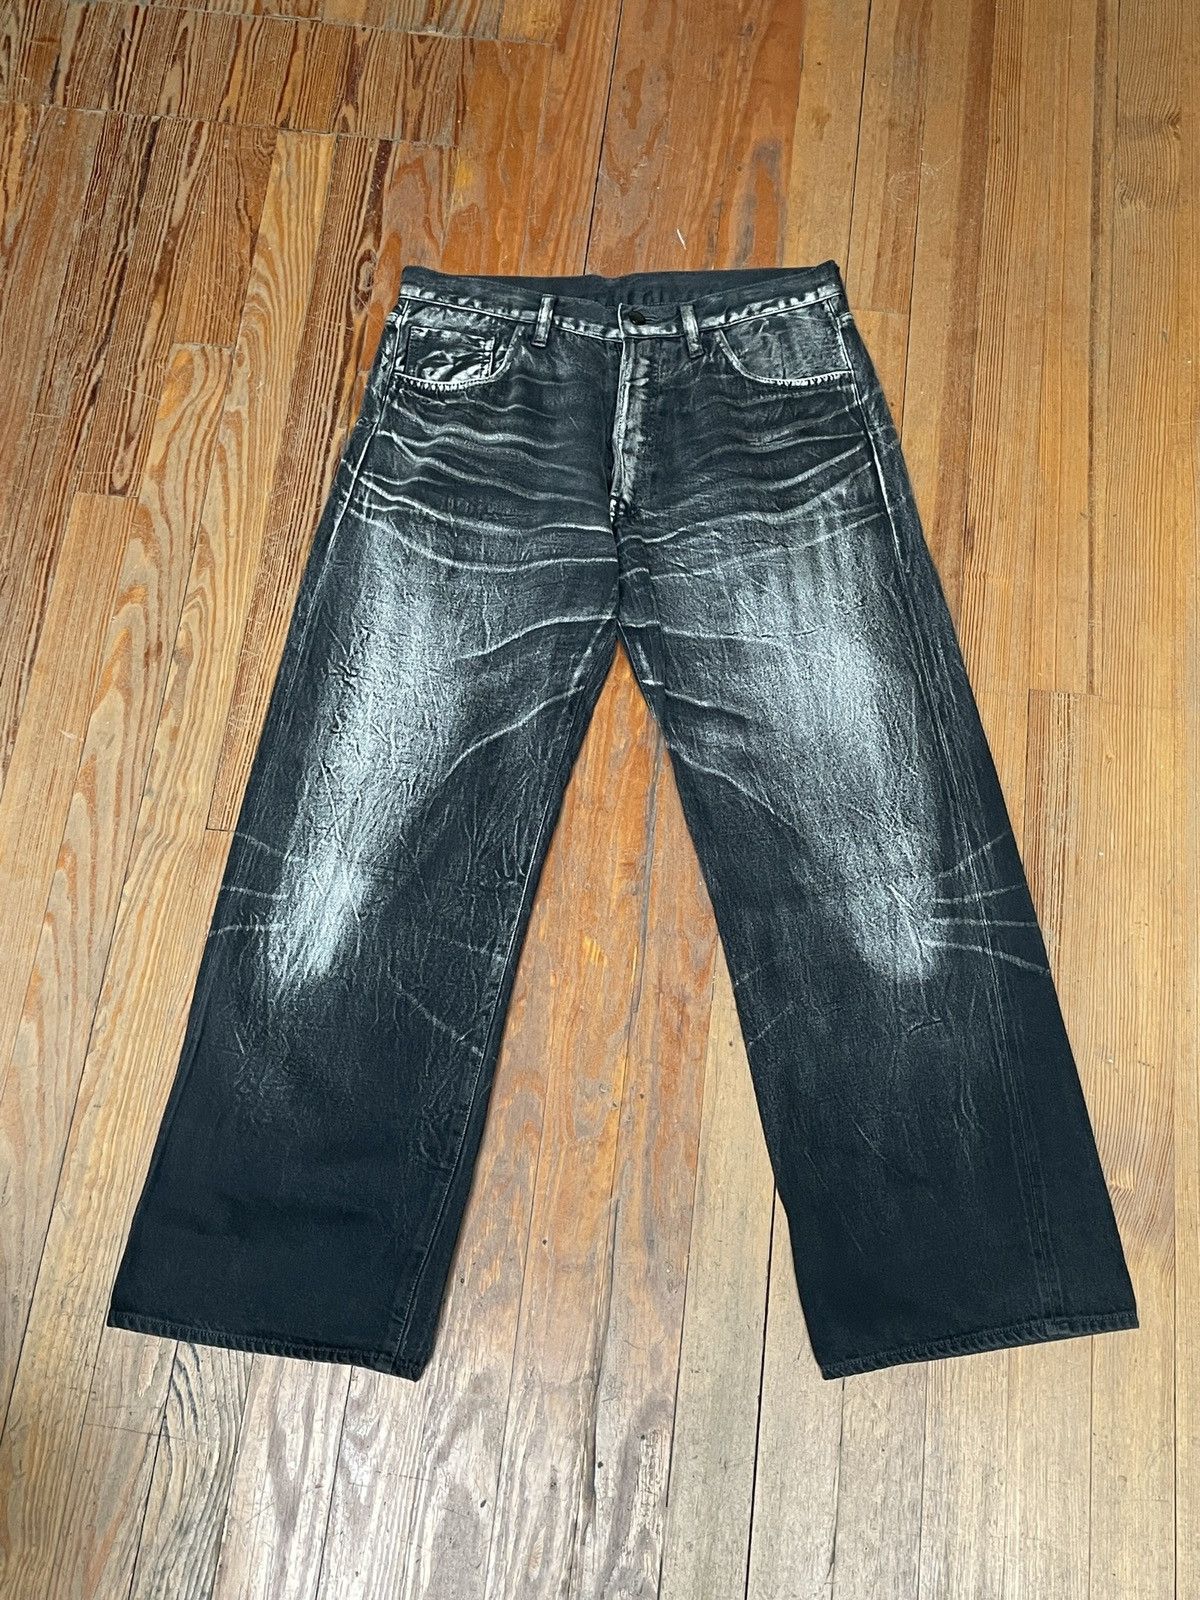 Yohji Yamamoto mainline customized pants - パンツ